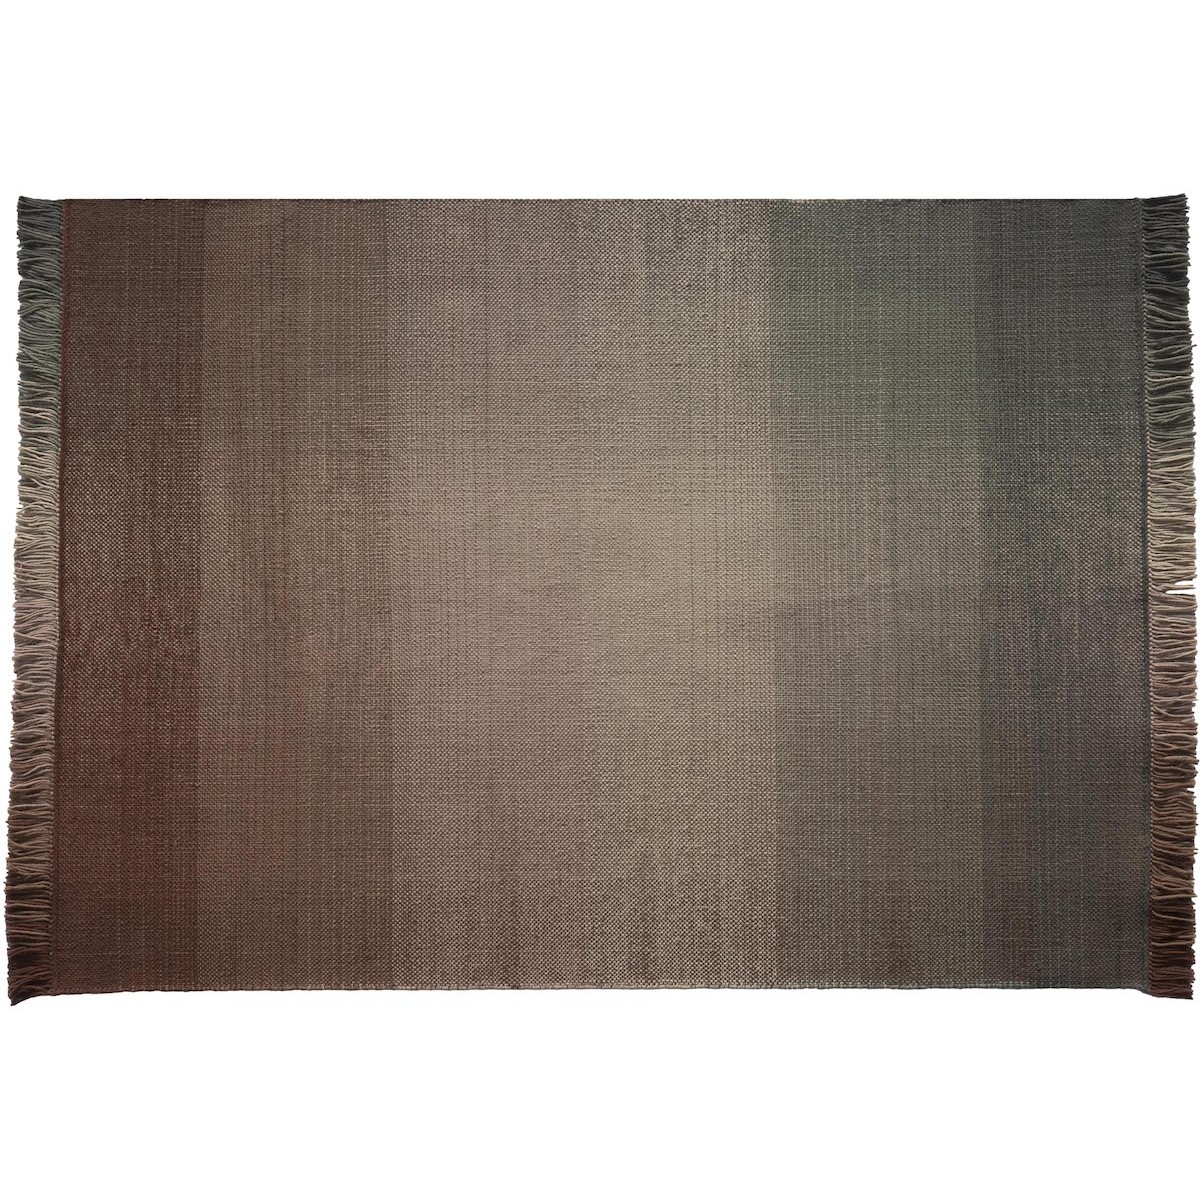 170x240cm - Palette 4 - tapis polyéthylène Shade